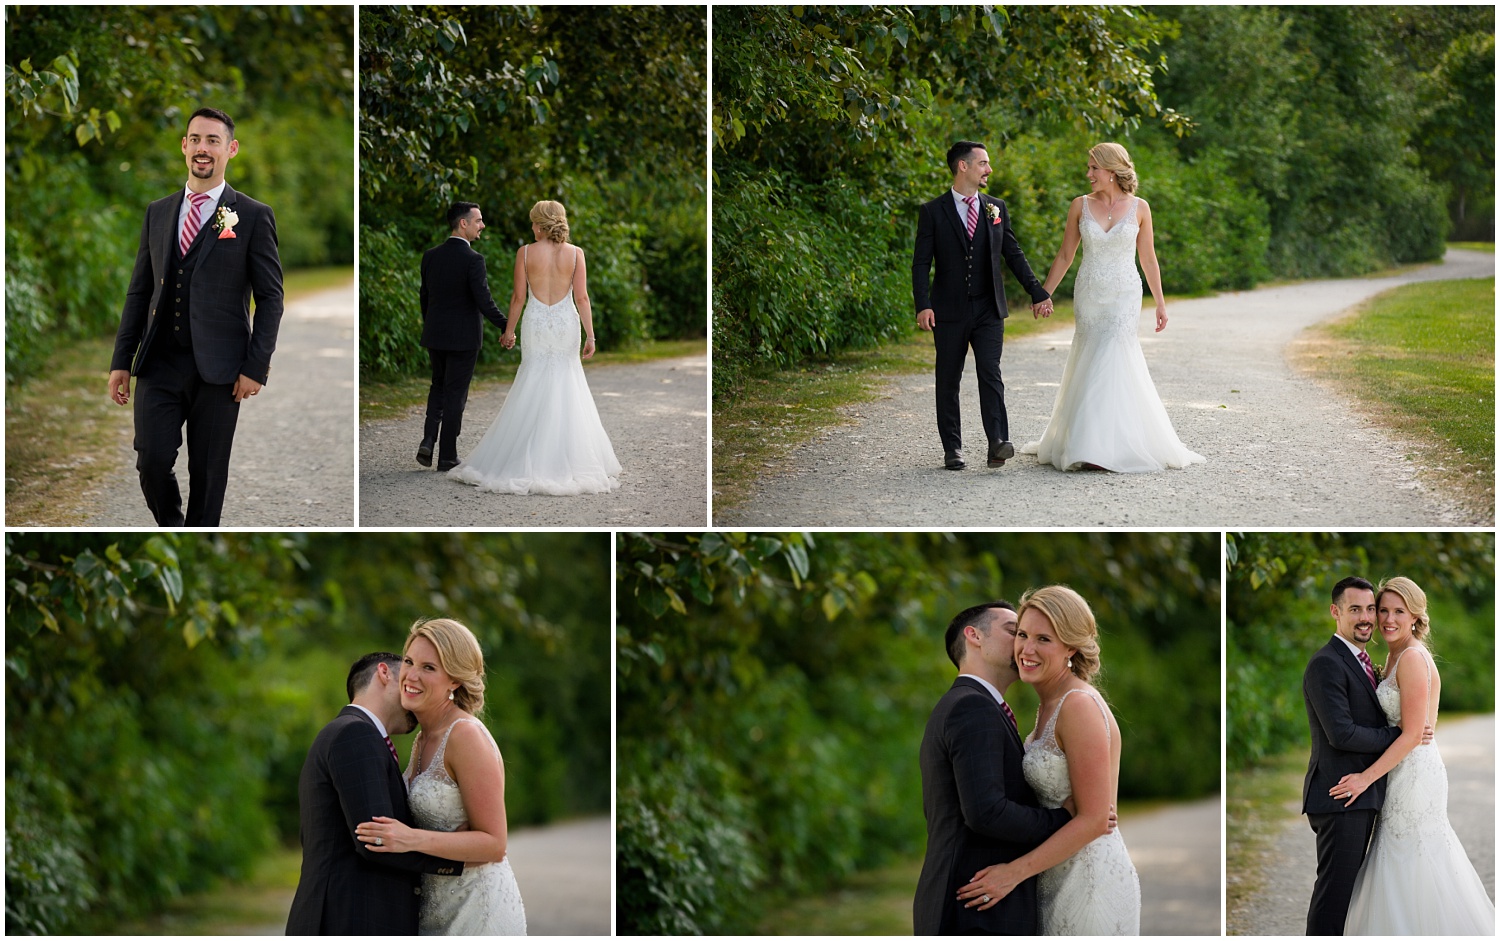 Amazing Day Photography - South Bonson Wedding - Pitt Meadows Wedding - Langley Wedding Photography (26).jpg